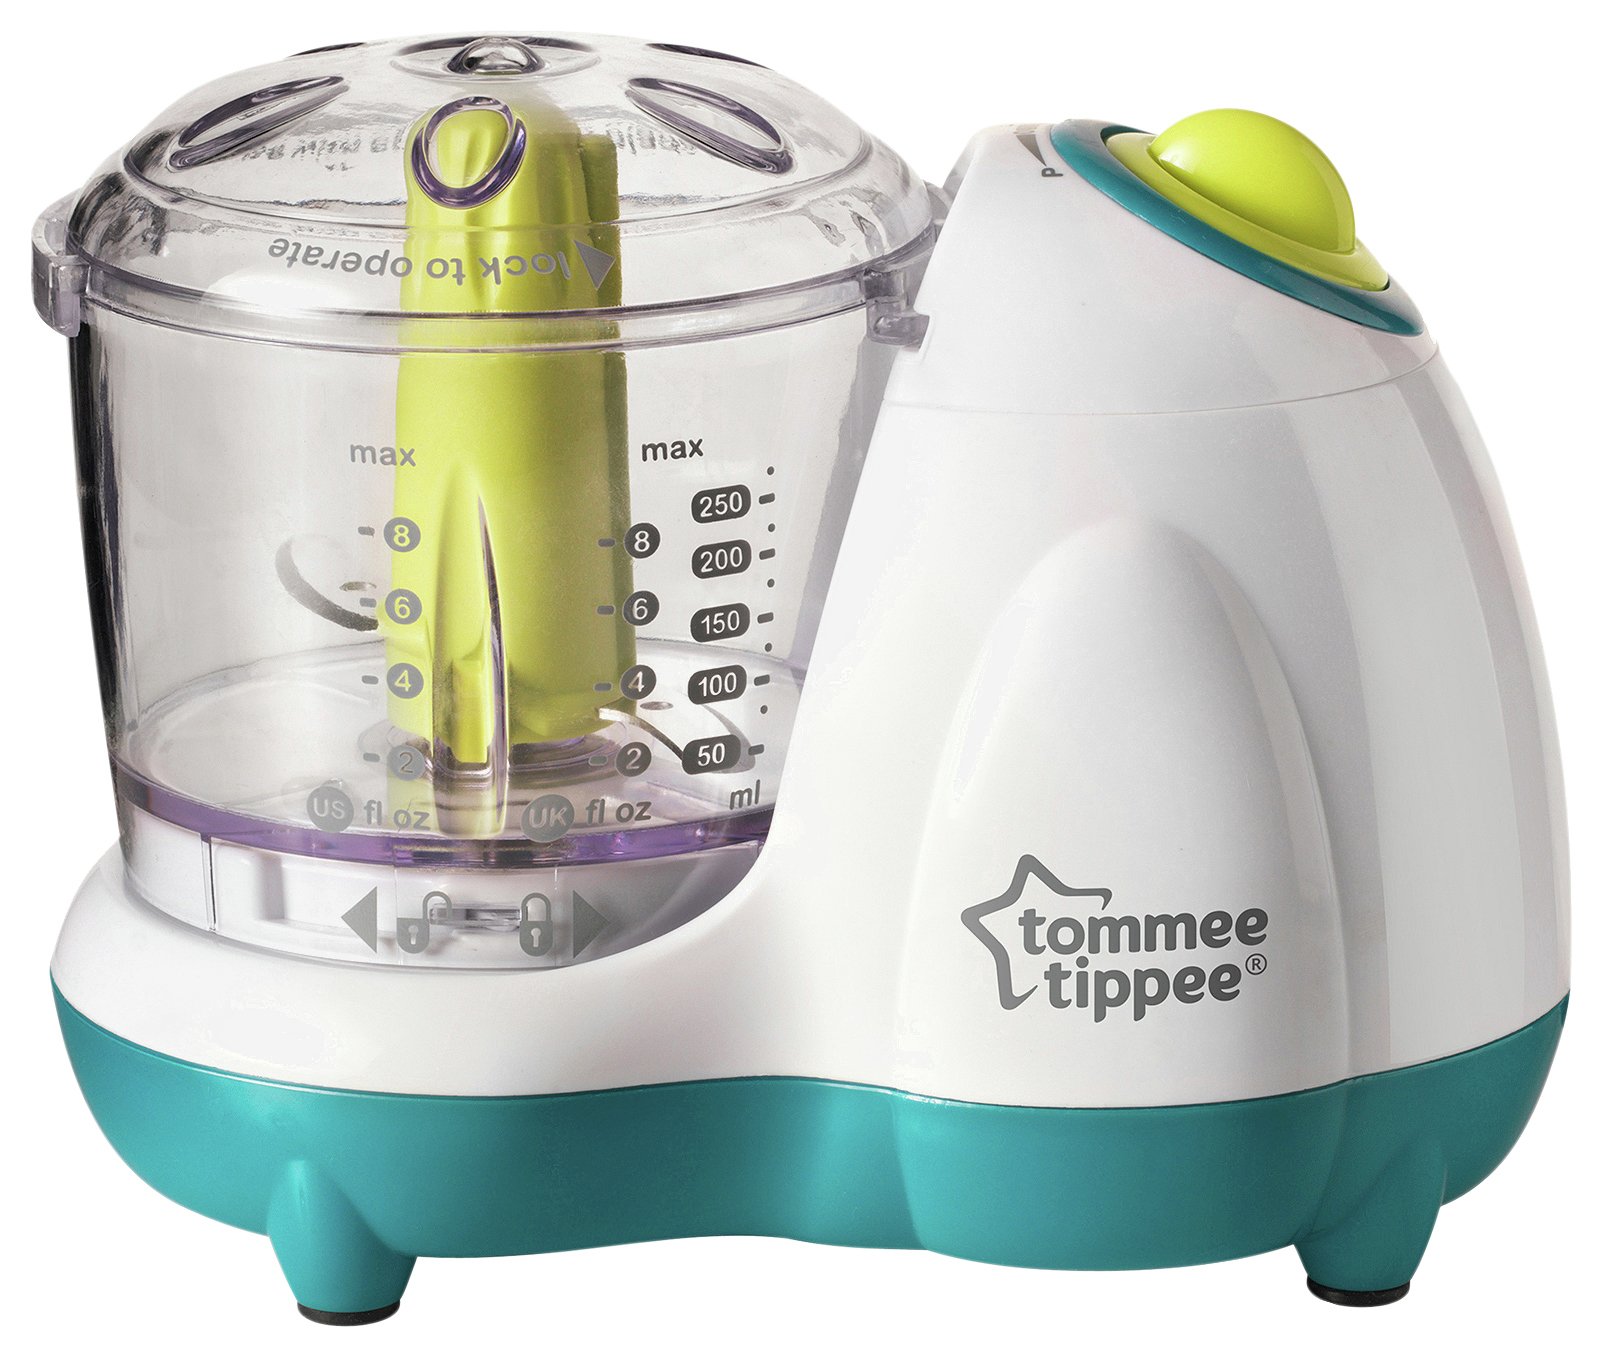 Tommee Tippee Baby Food Blender